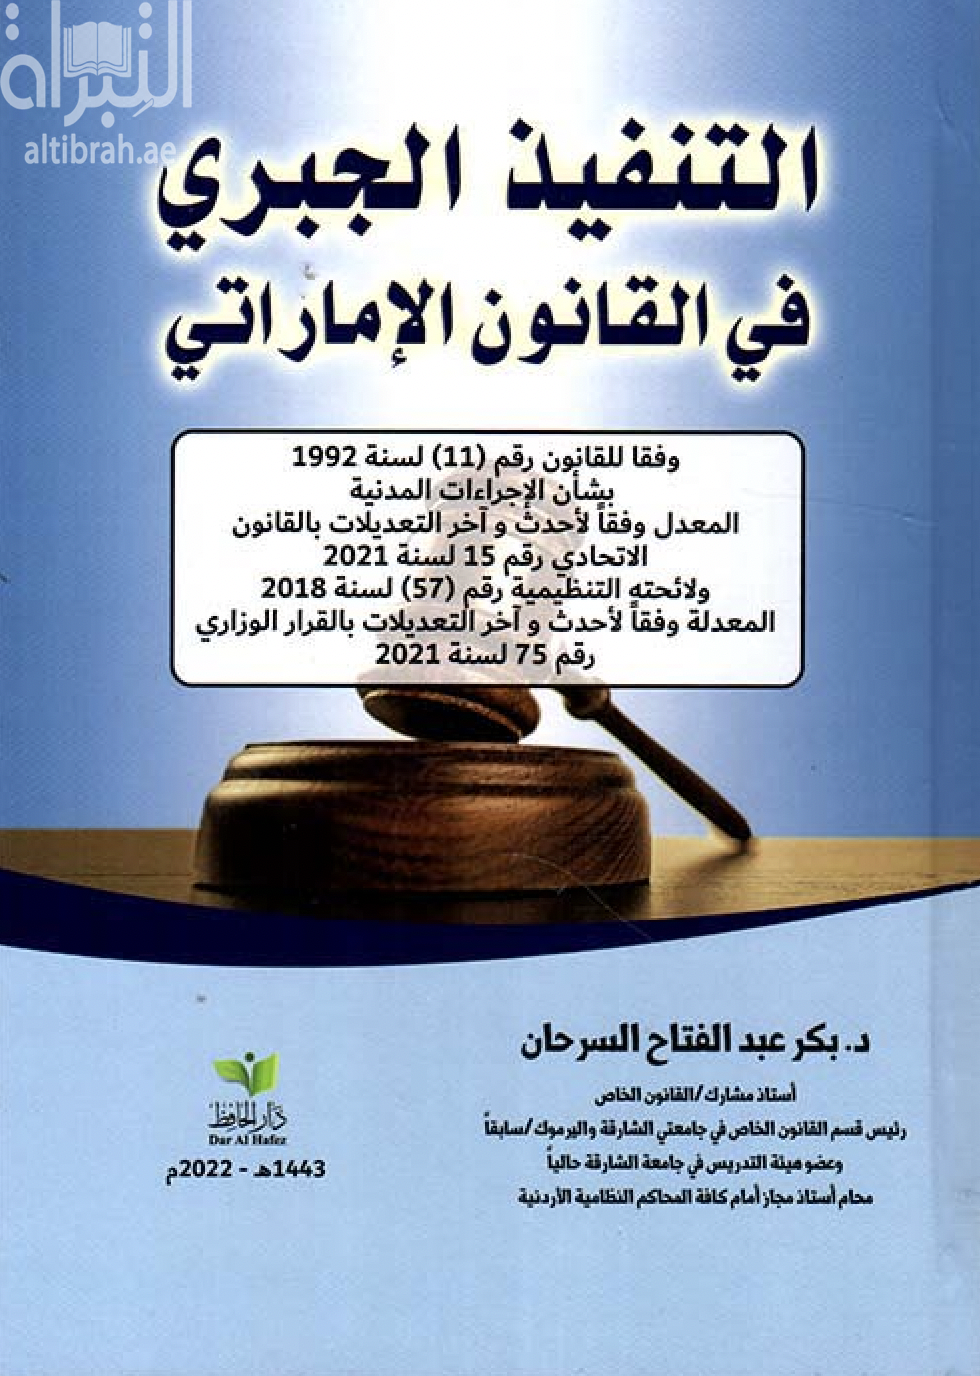 التنفيذ الجبري في القانون الإماراتي : وفقا للقانون رقم (11) لسنة 1992 بشأن الإجراءات المدنية المعدل وفقا لأحدث التعديلات بالقانون الإتحادي رقم 15 لسنة 2021و لائحته التنظيمية رقم (57) لسنة 2018 المعدلة وفقا لأحدث و آخر التعديلات بالقرار الوزاري رقم 75 لسنة 2021